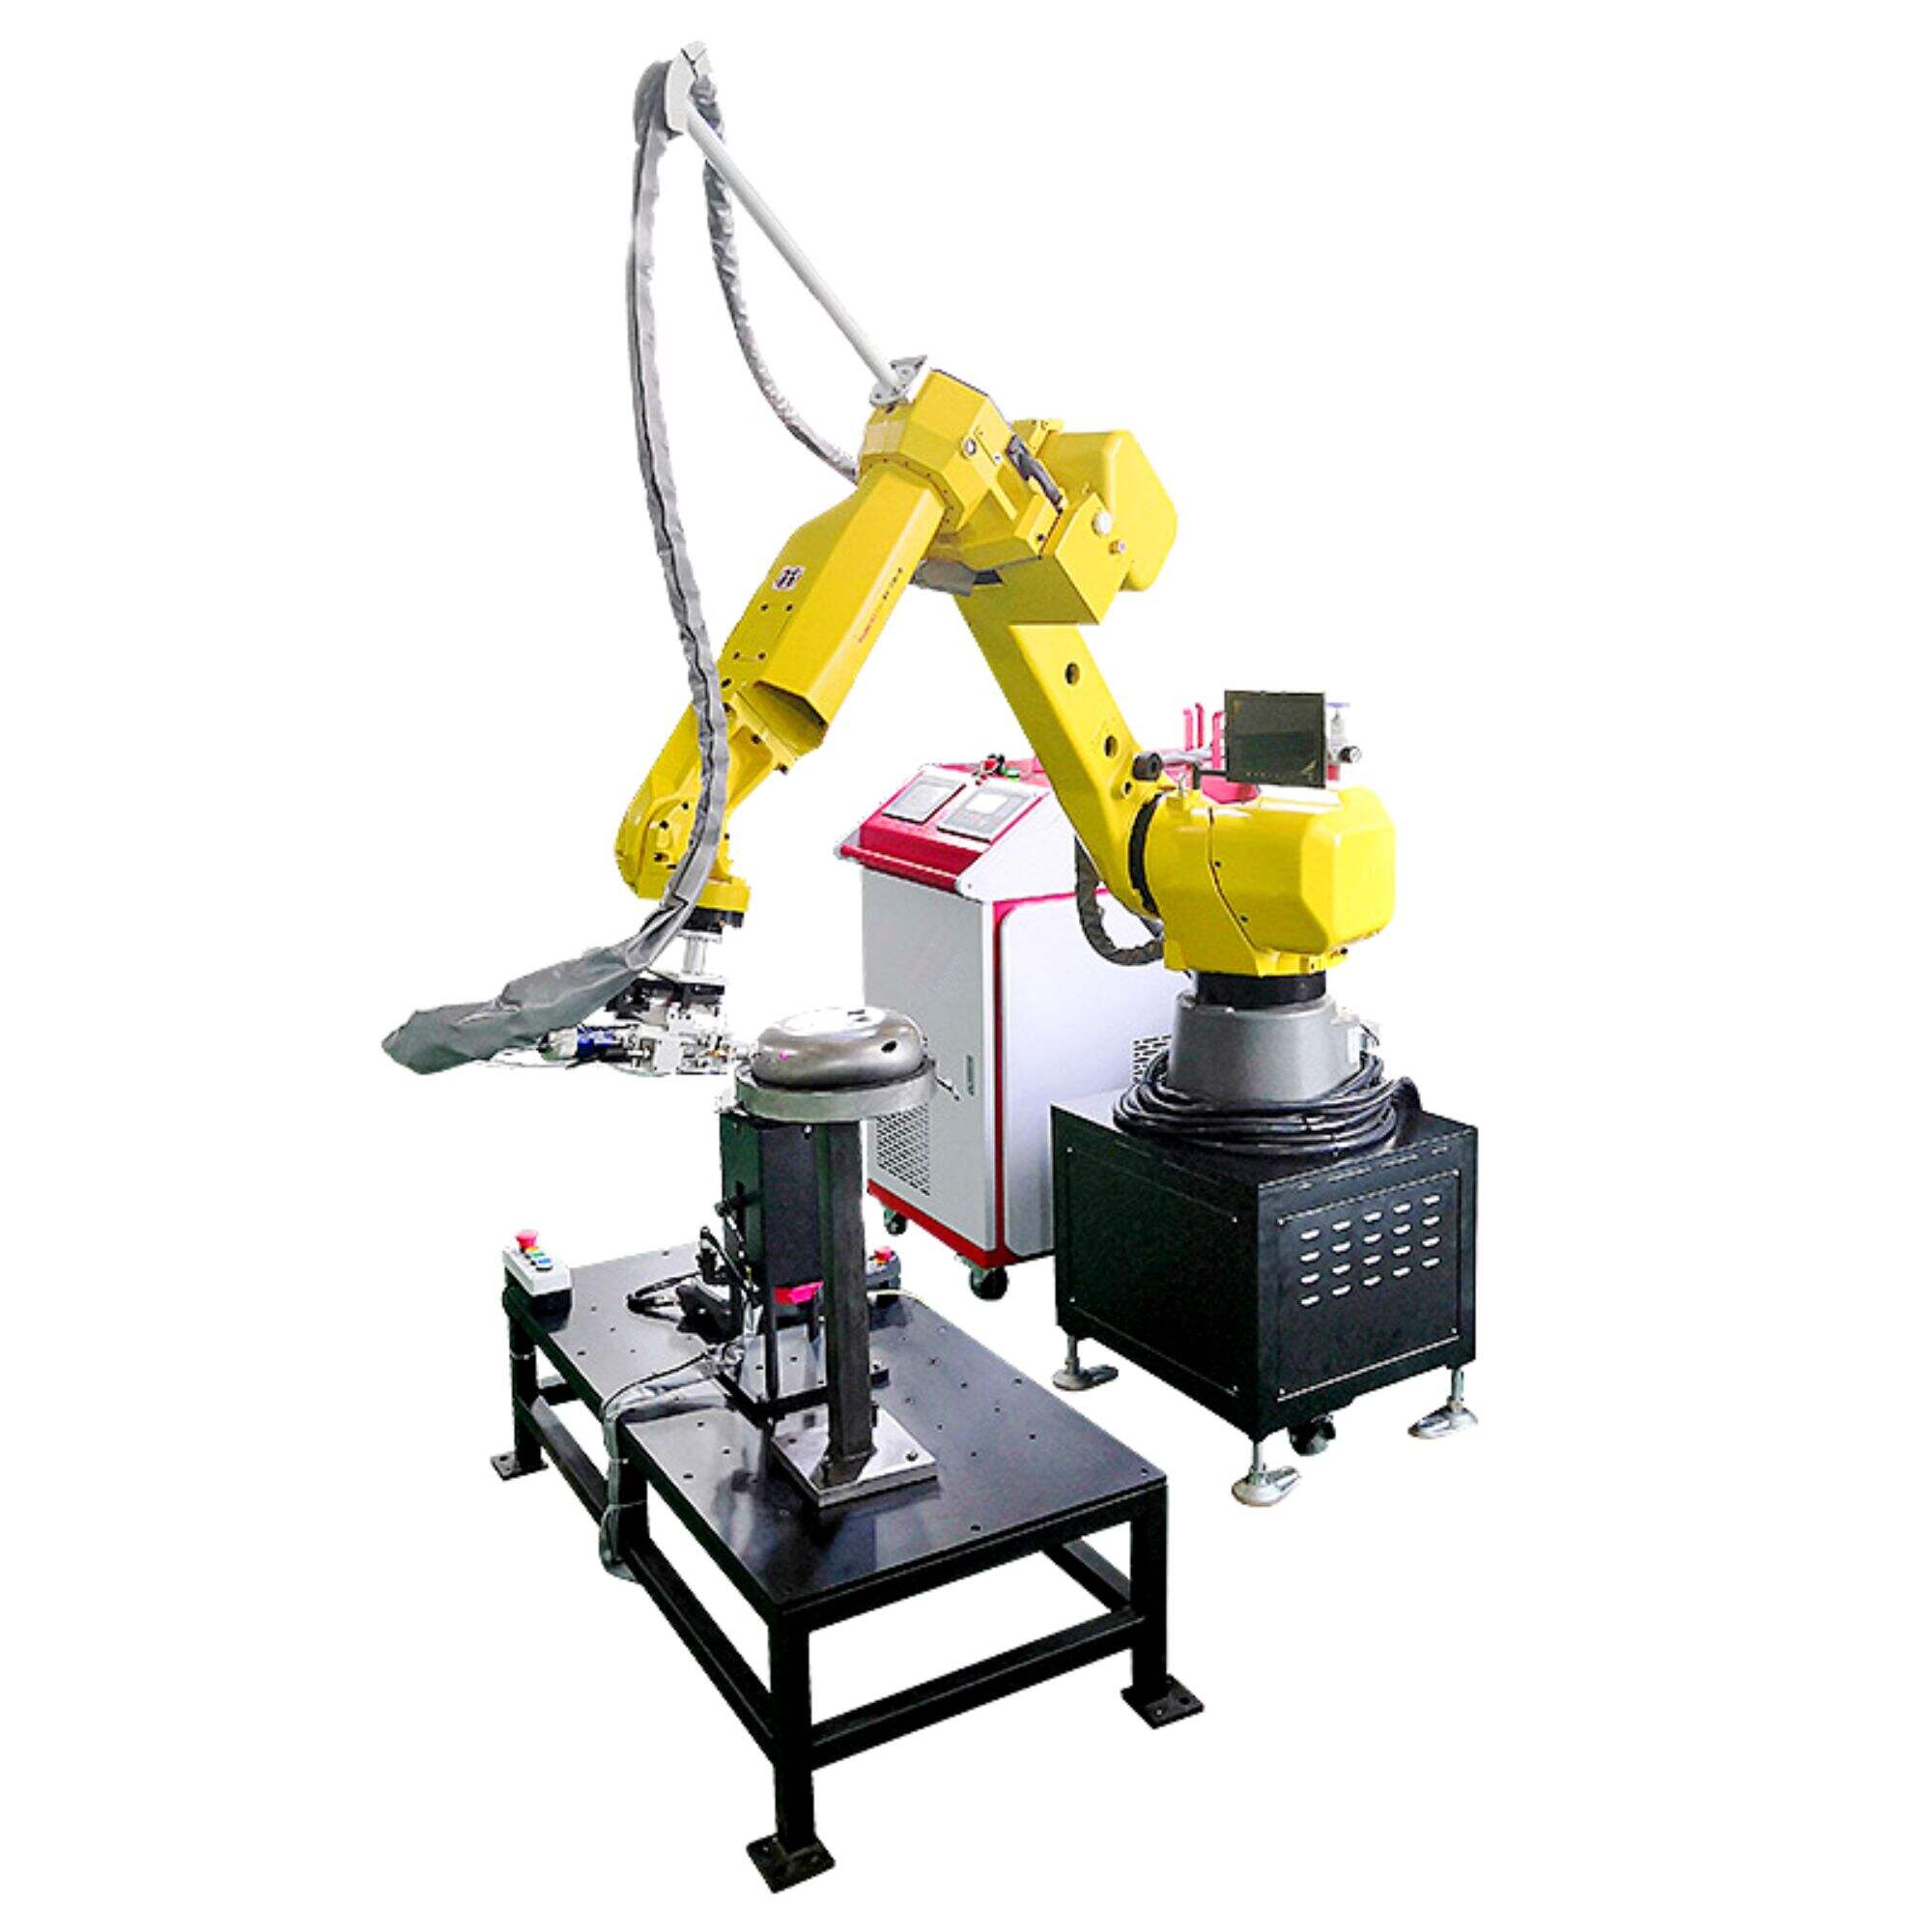 6-axis Robotic Laser Welding Machine